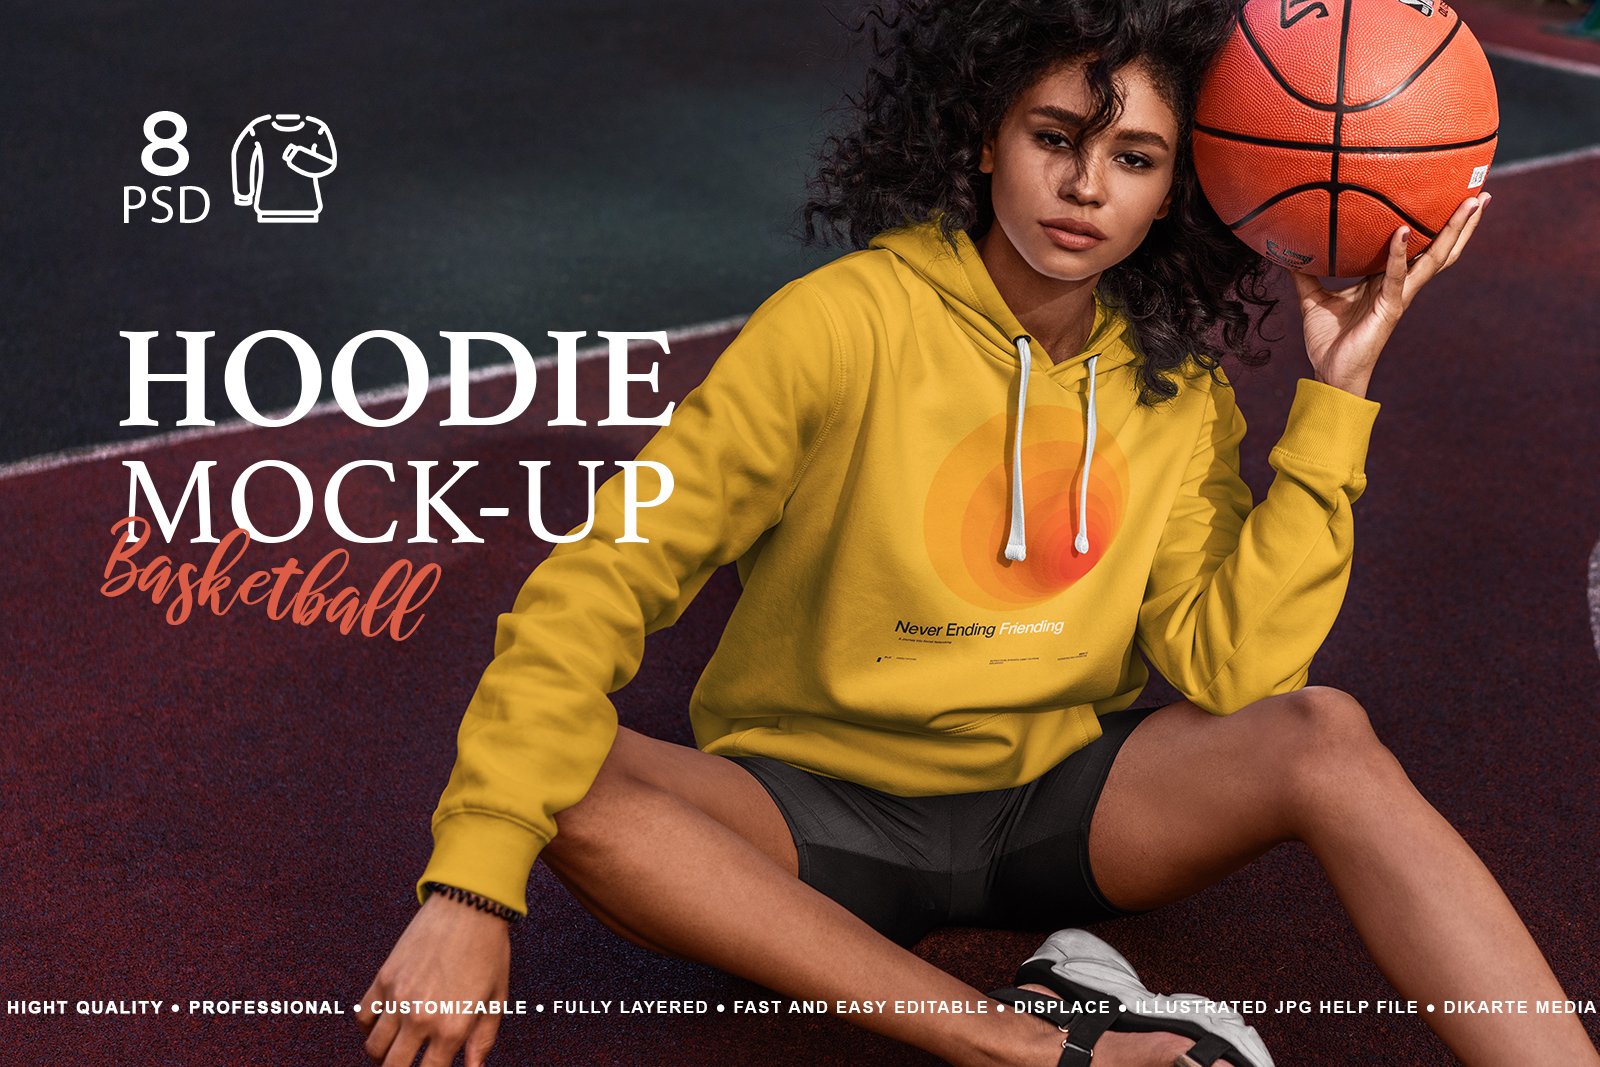 Hoodie MockUp Basketball cover image.